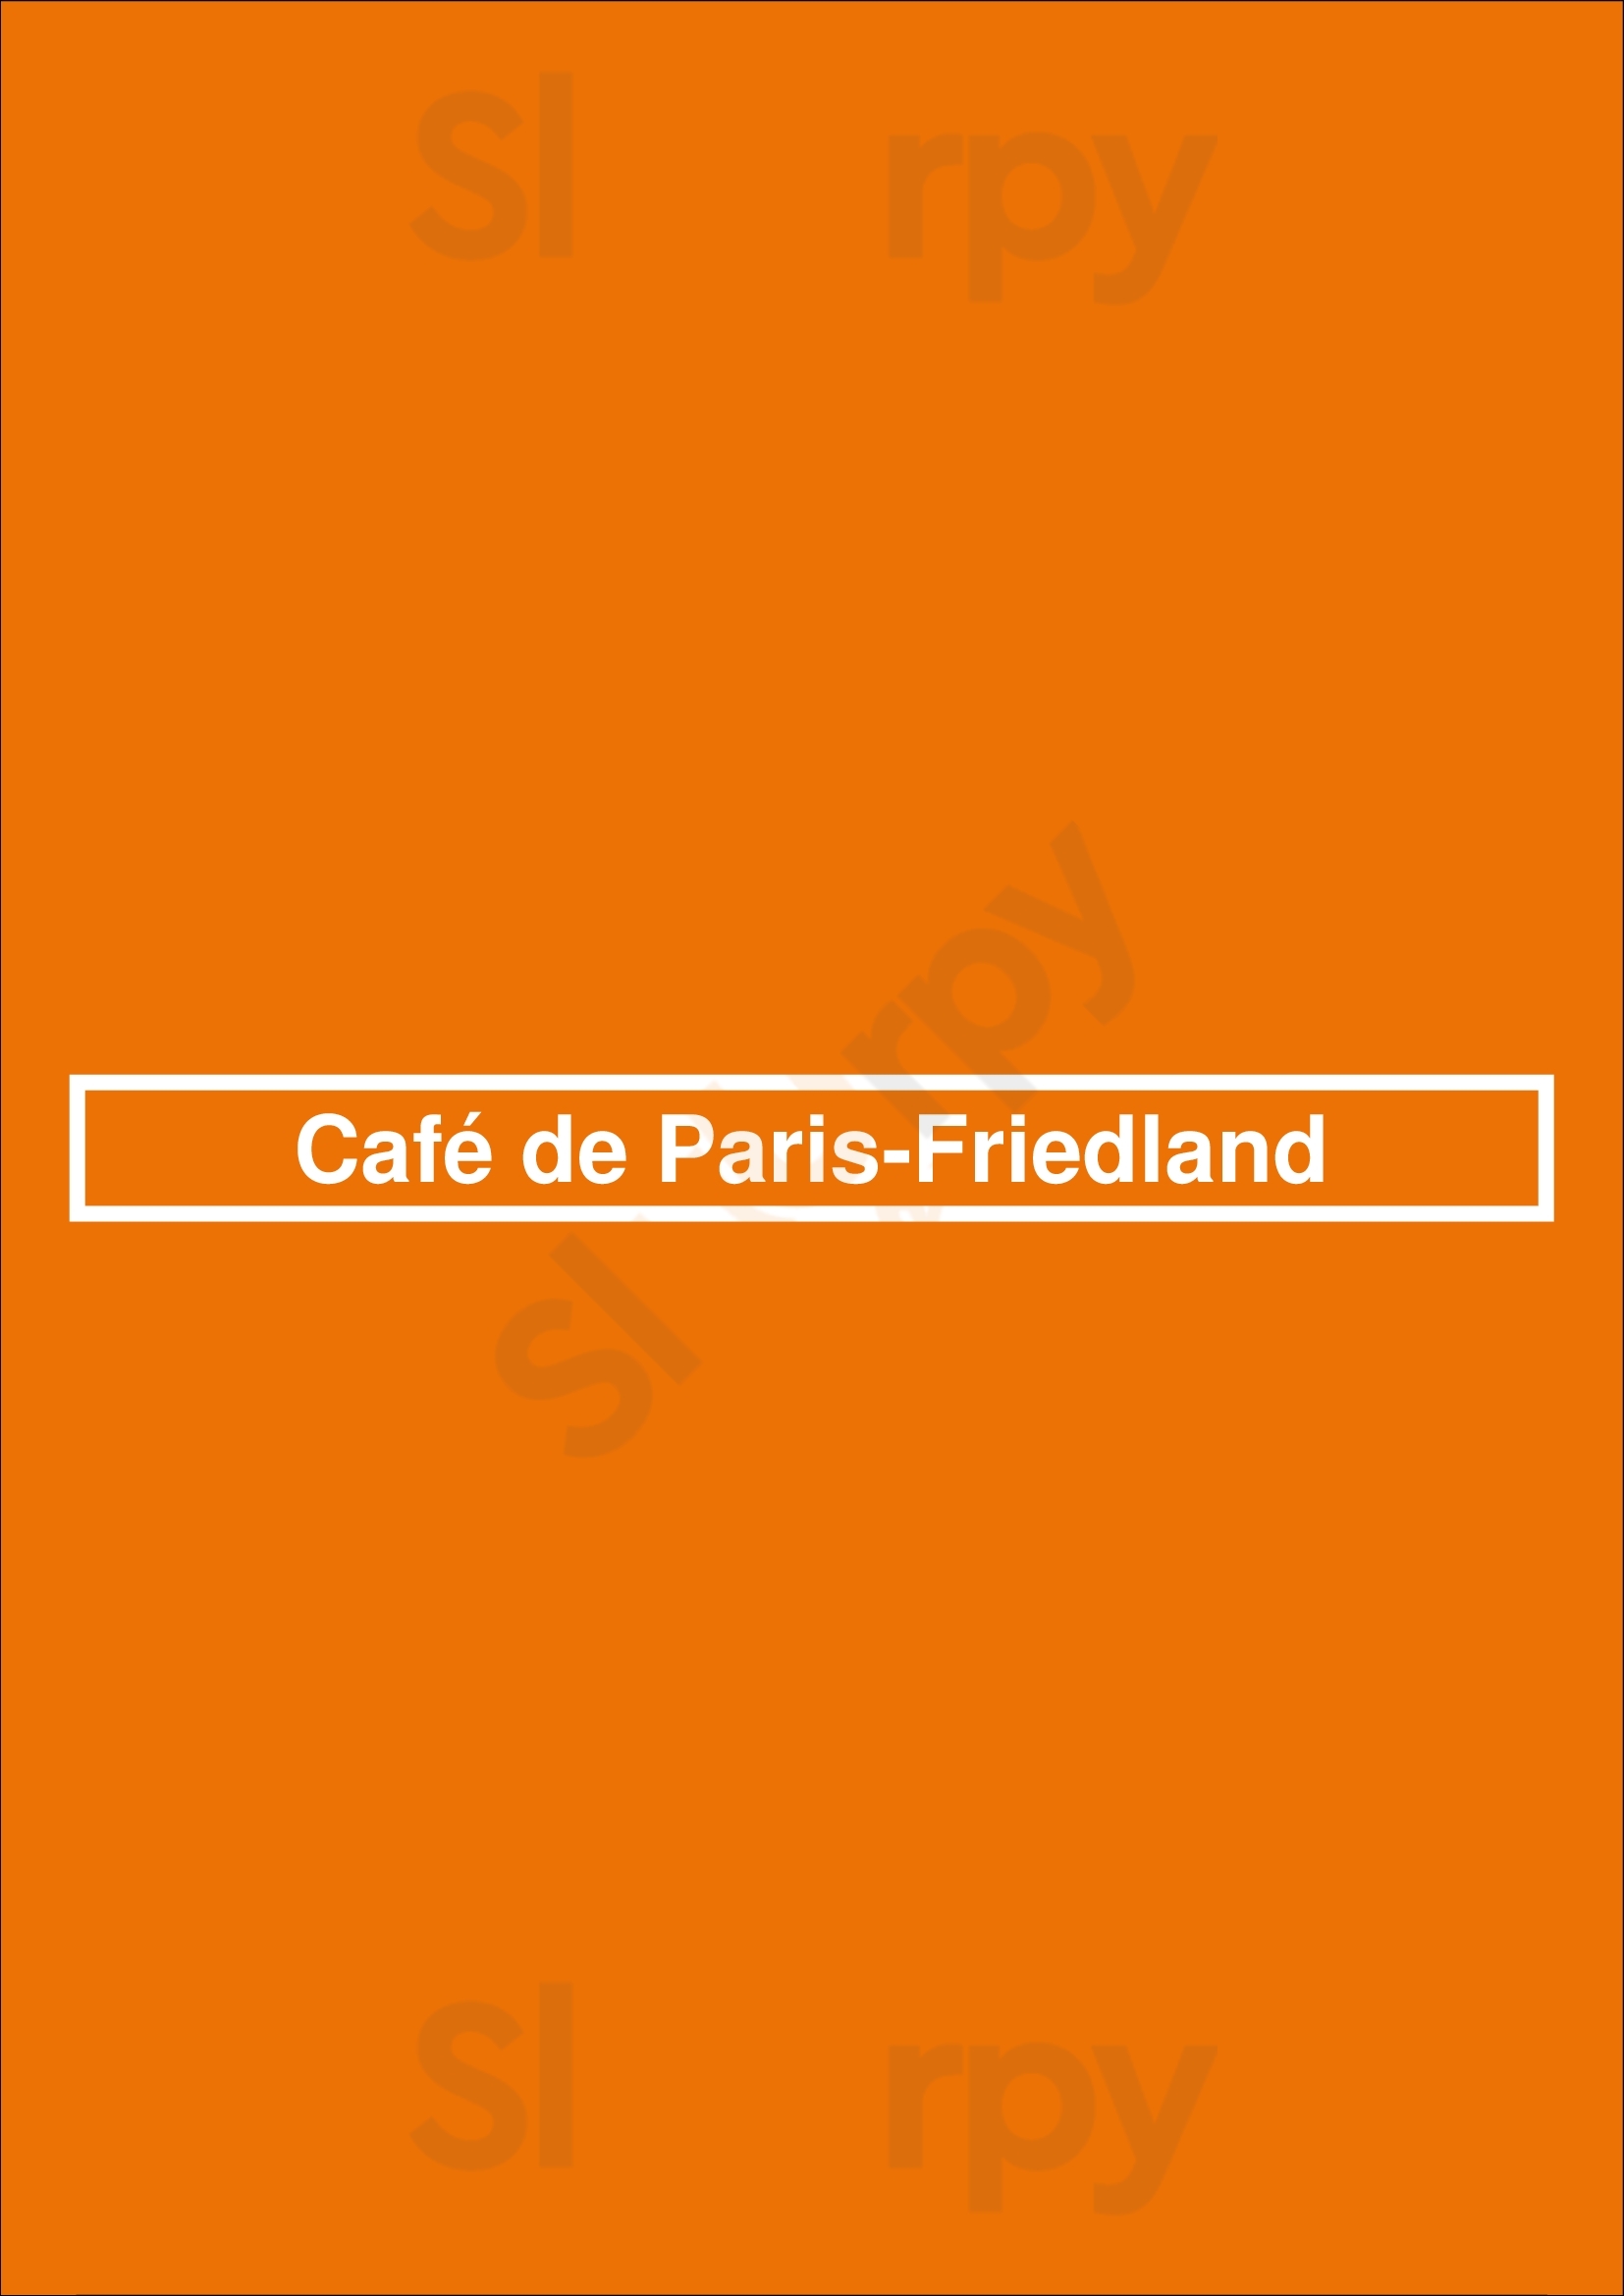 Café De Paris-friedland Paris Menu - 1